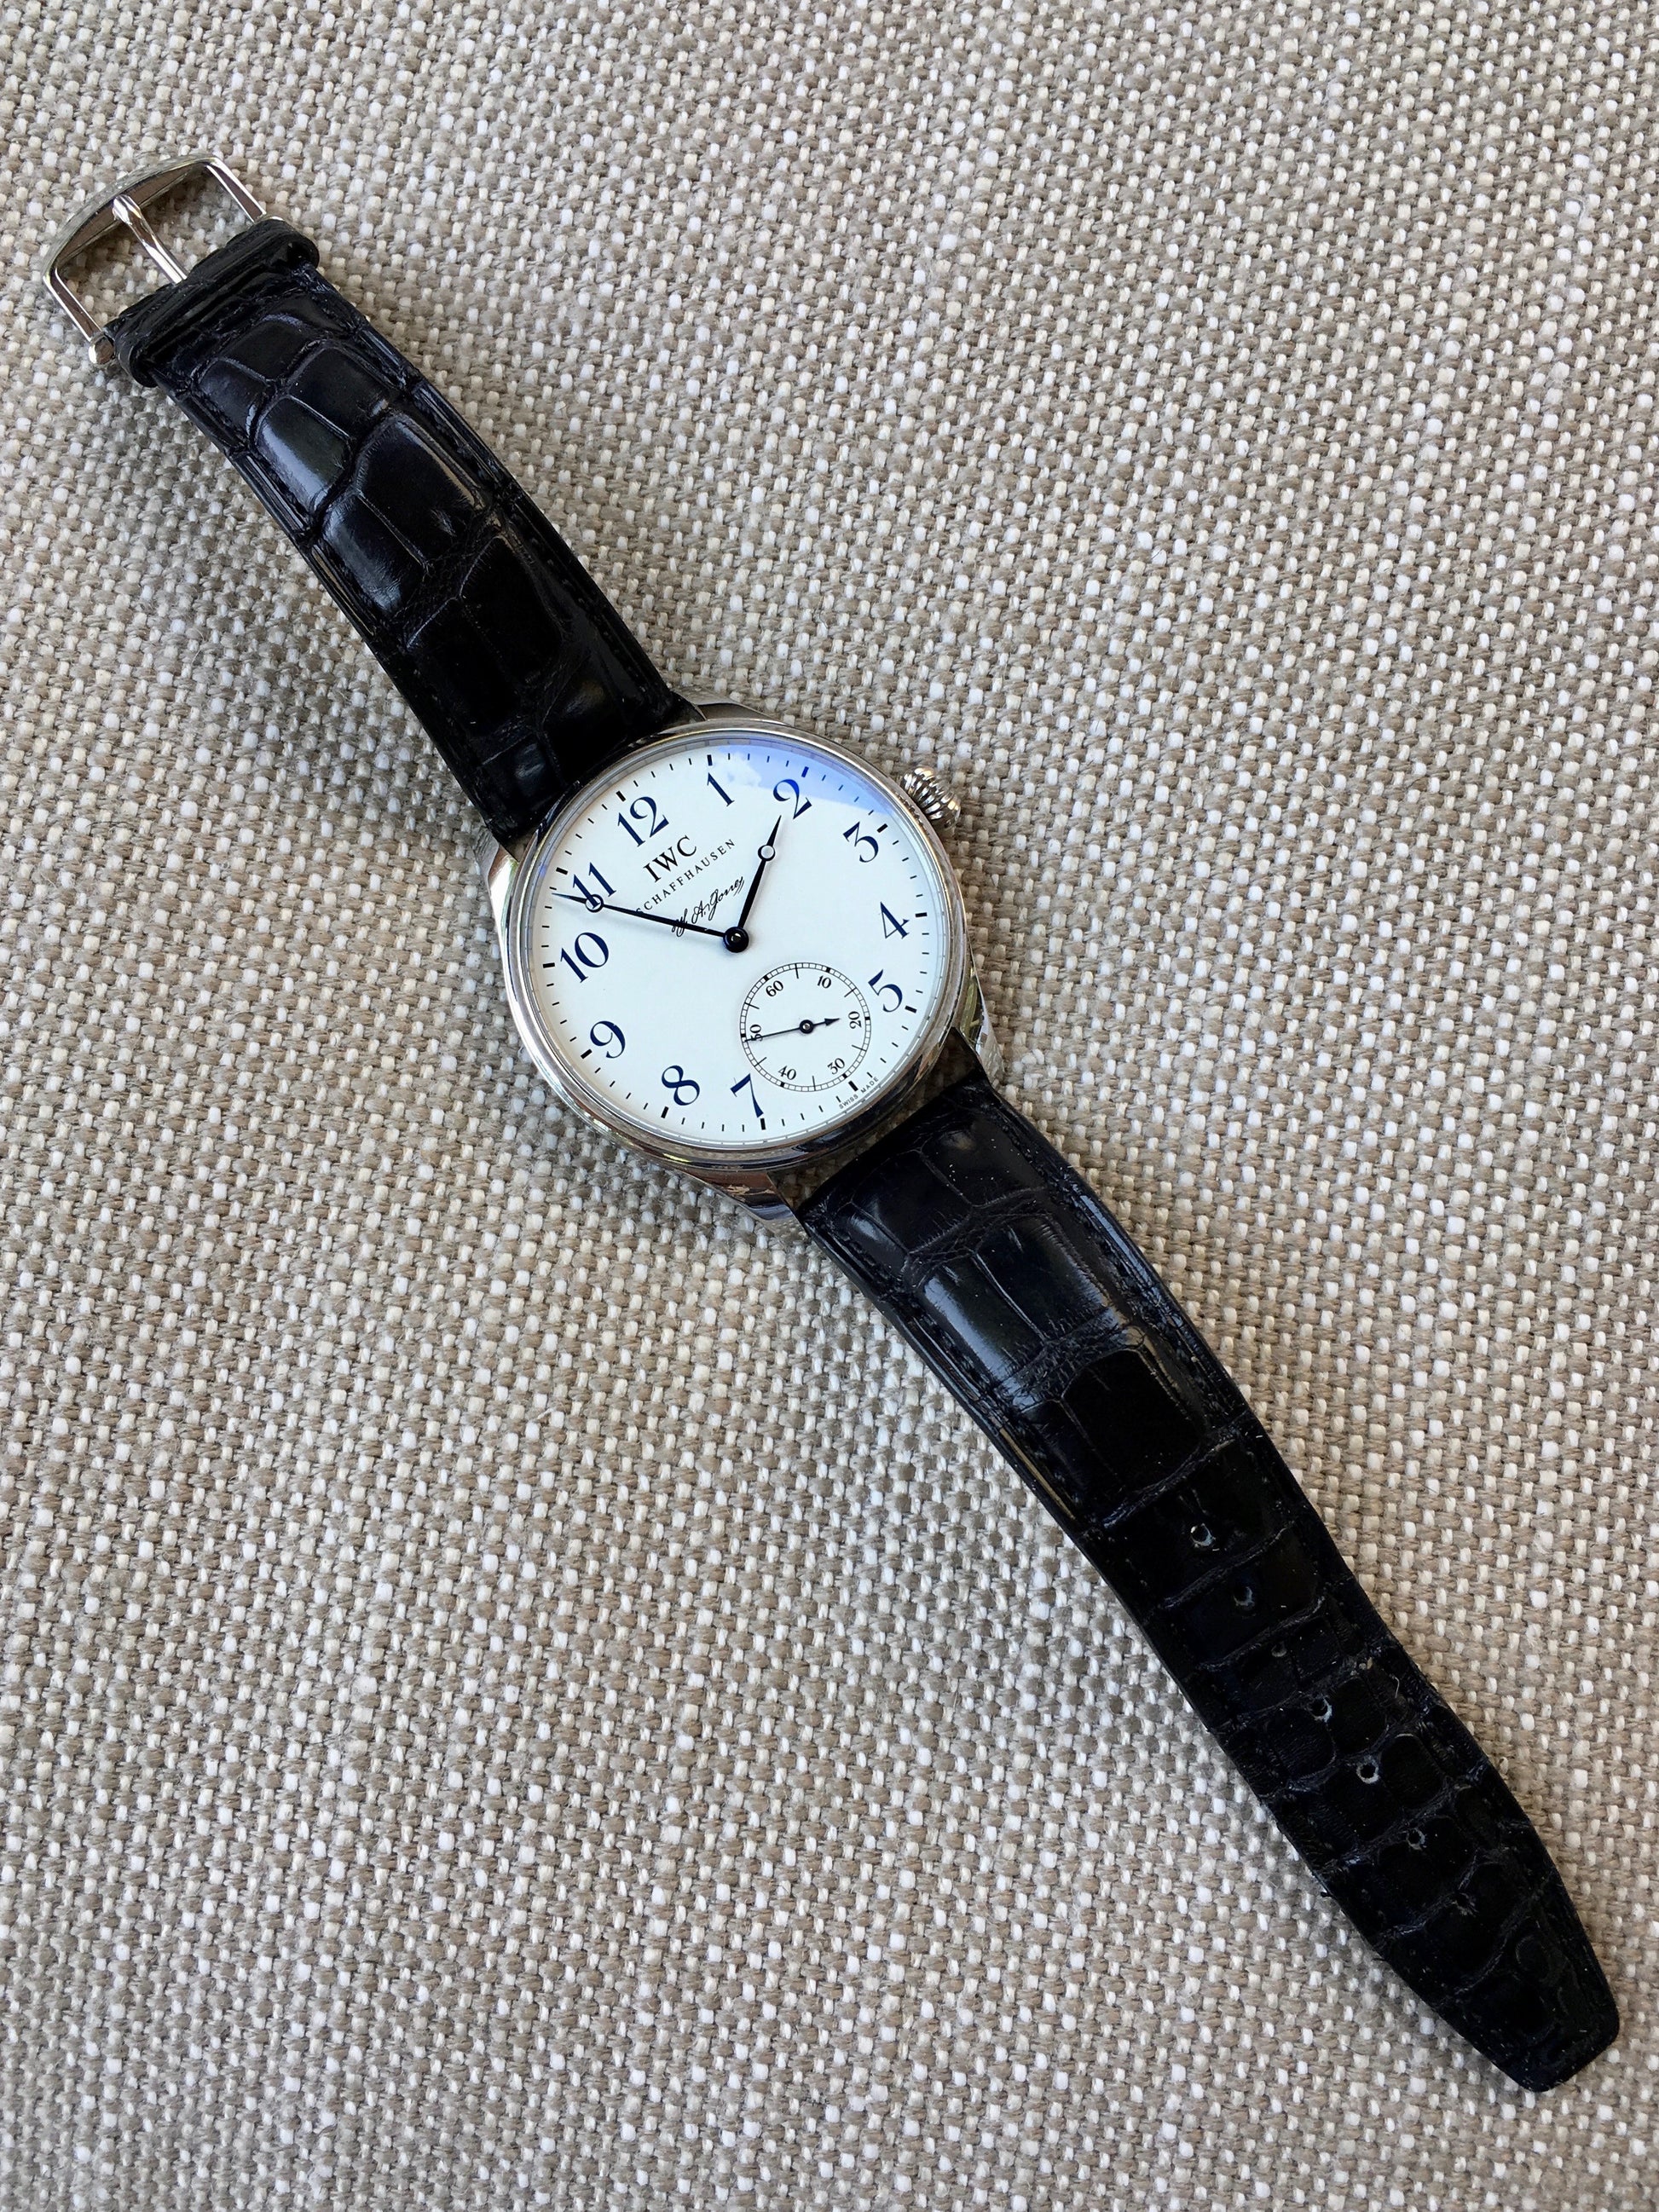 IWC Portuguese F.A. Jones 5442 Limited Edition 42mm Manual Wind Enamel Wristwatch - Hashtag Watch Company